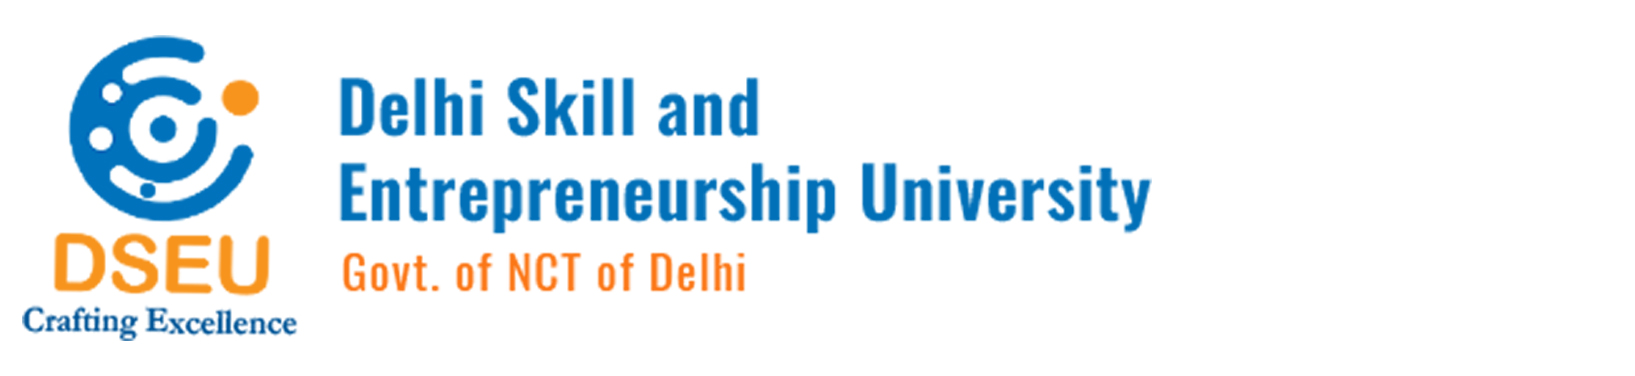 Chetak Logistics Ltd Delhi Skill and Entrepreneurship University